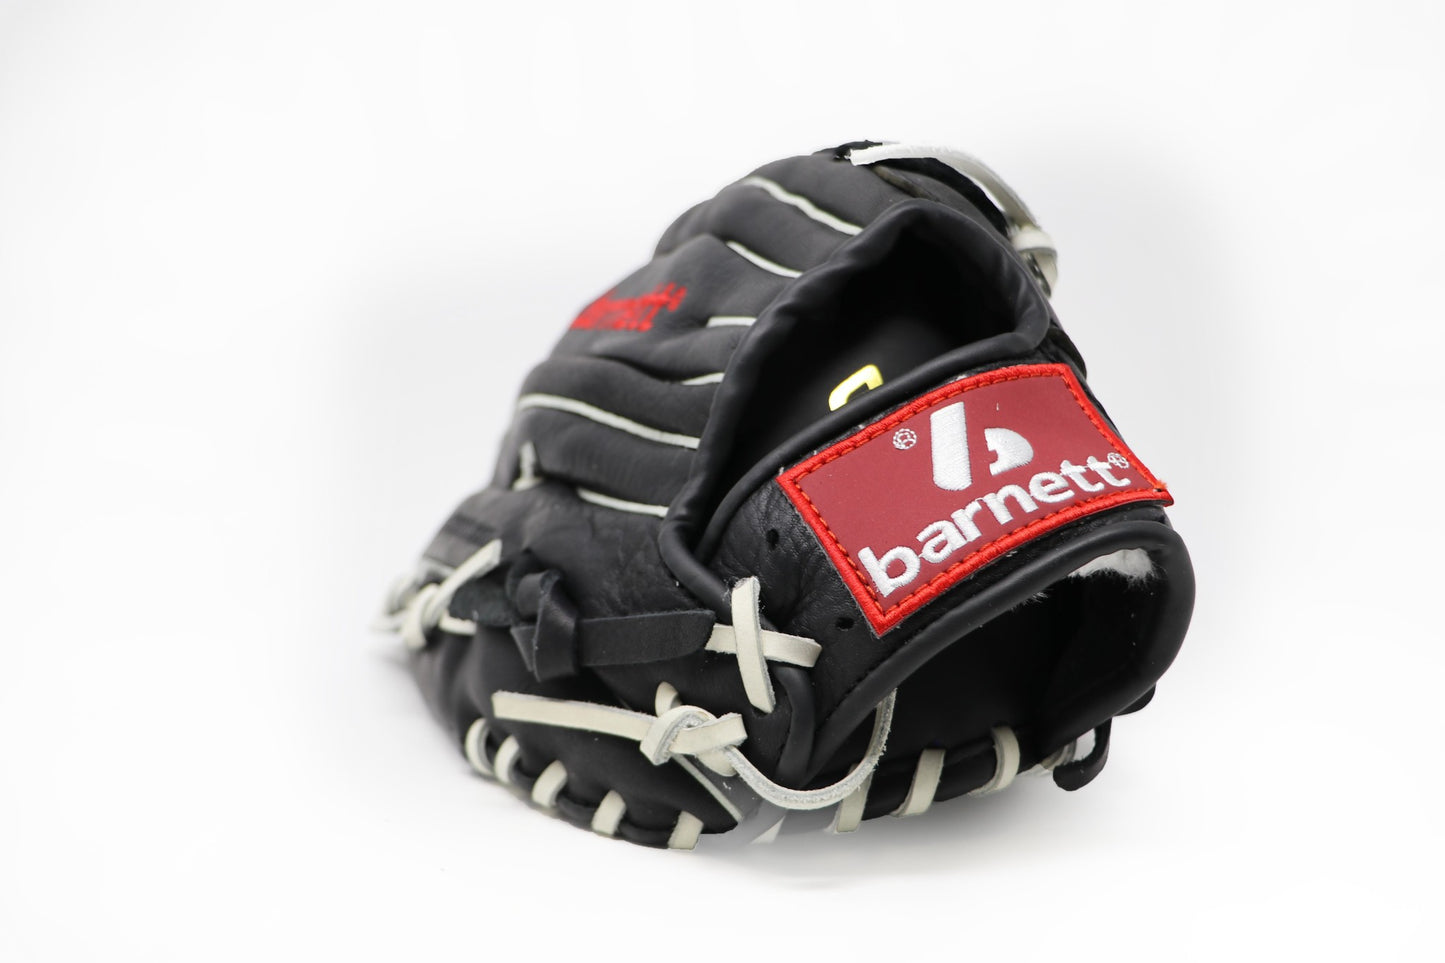 GL-120 outfield 12 soutěžní kožené baseballové rukavice, černé